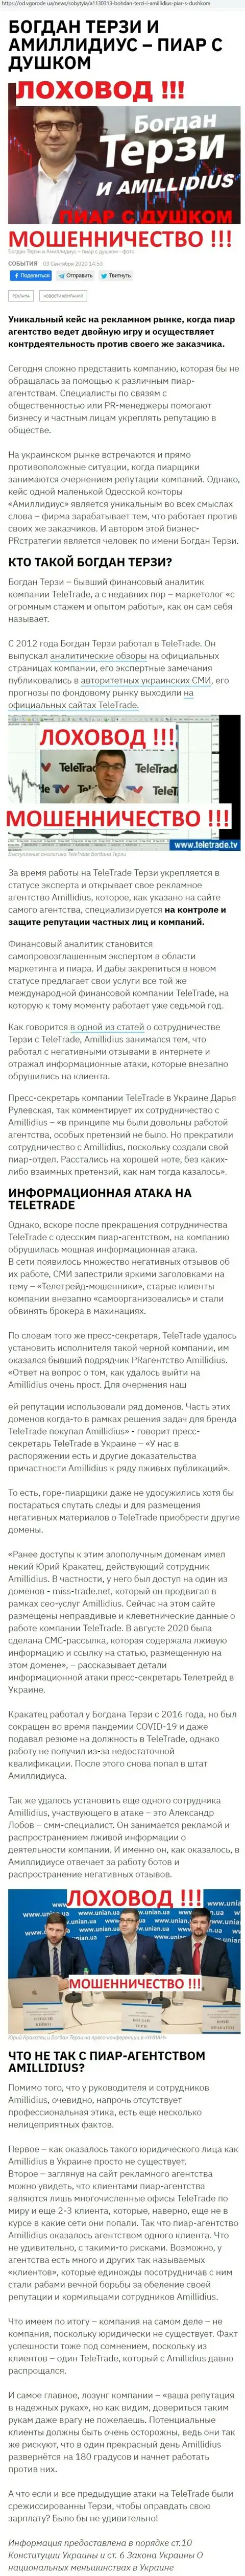 Богдан Терзи ненадежный партнер, информация со слов бывшего работника пиар-организации Амиллидиус Ком